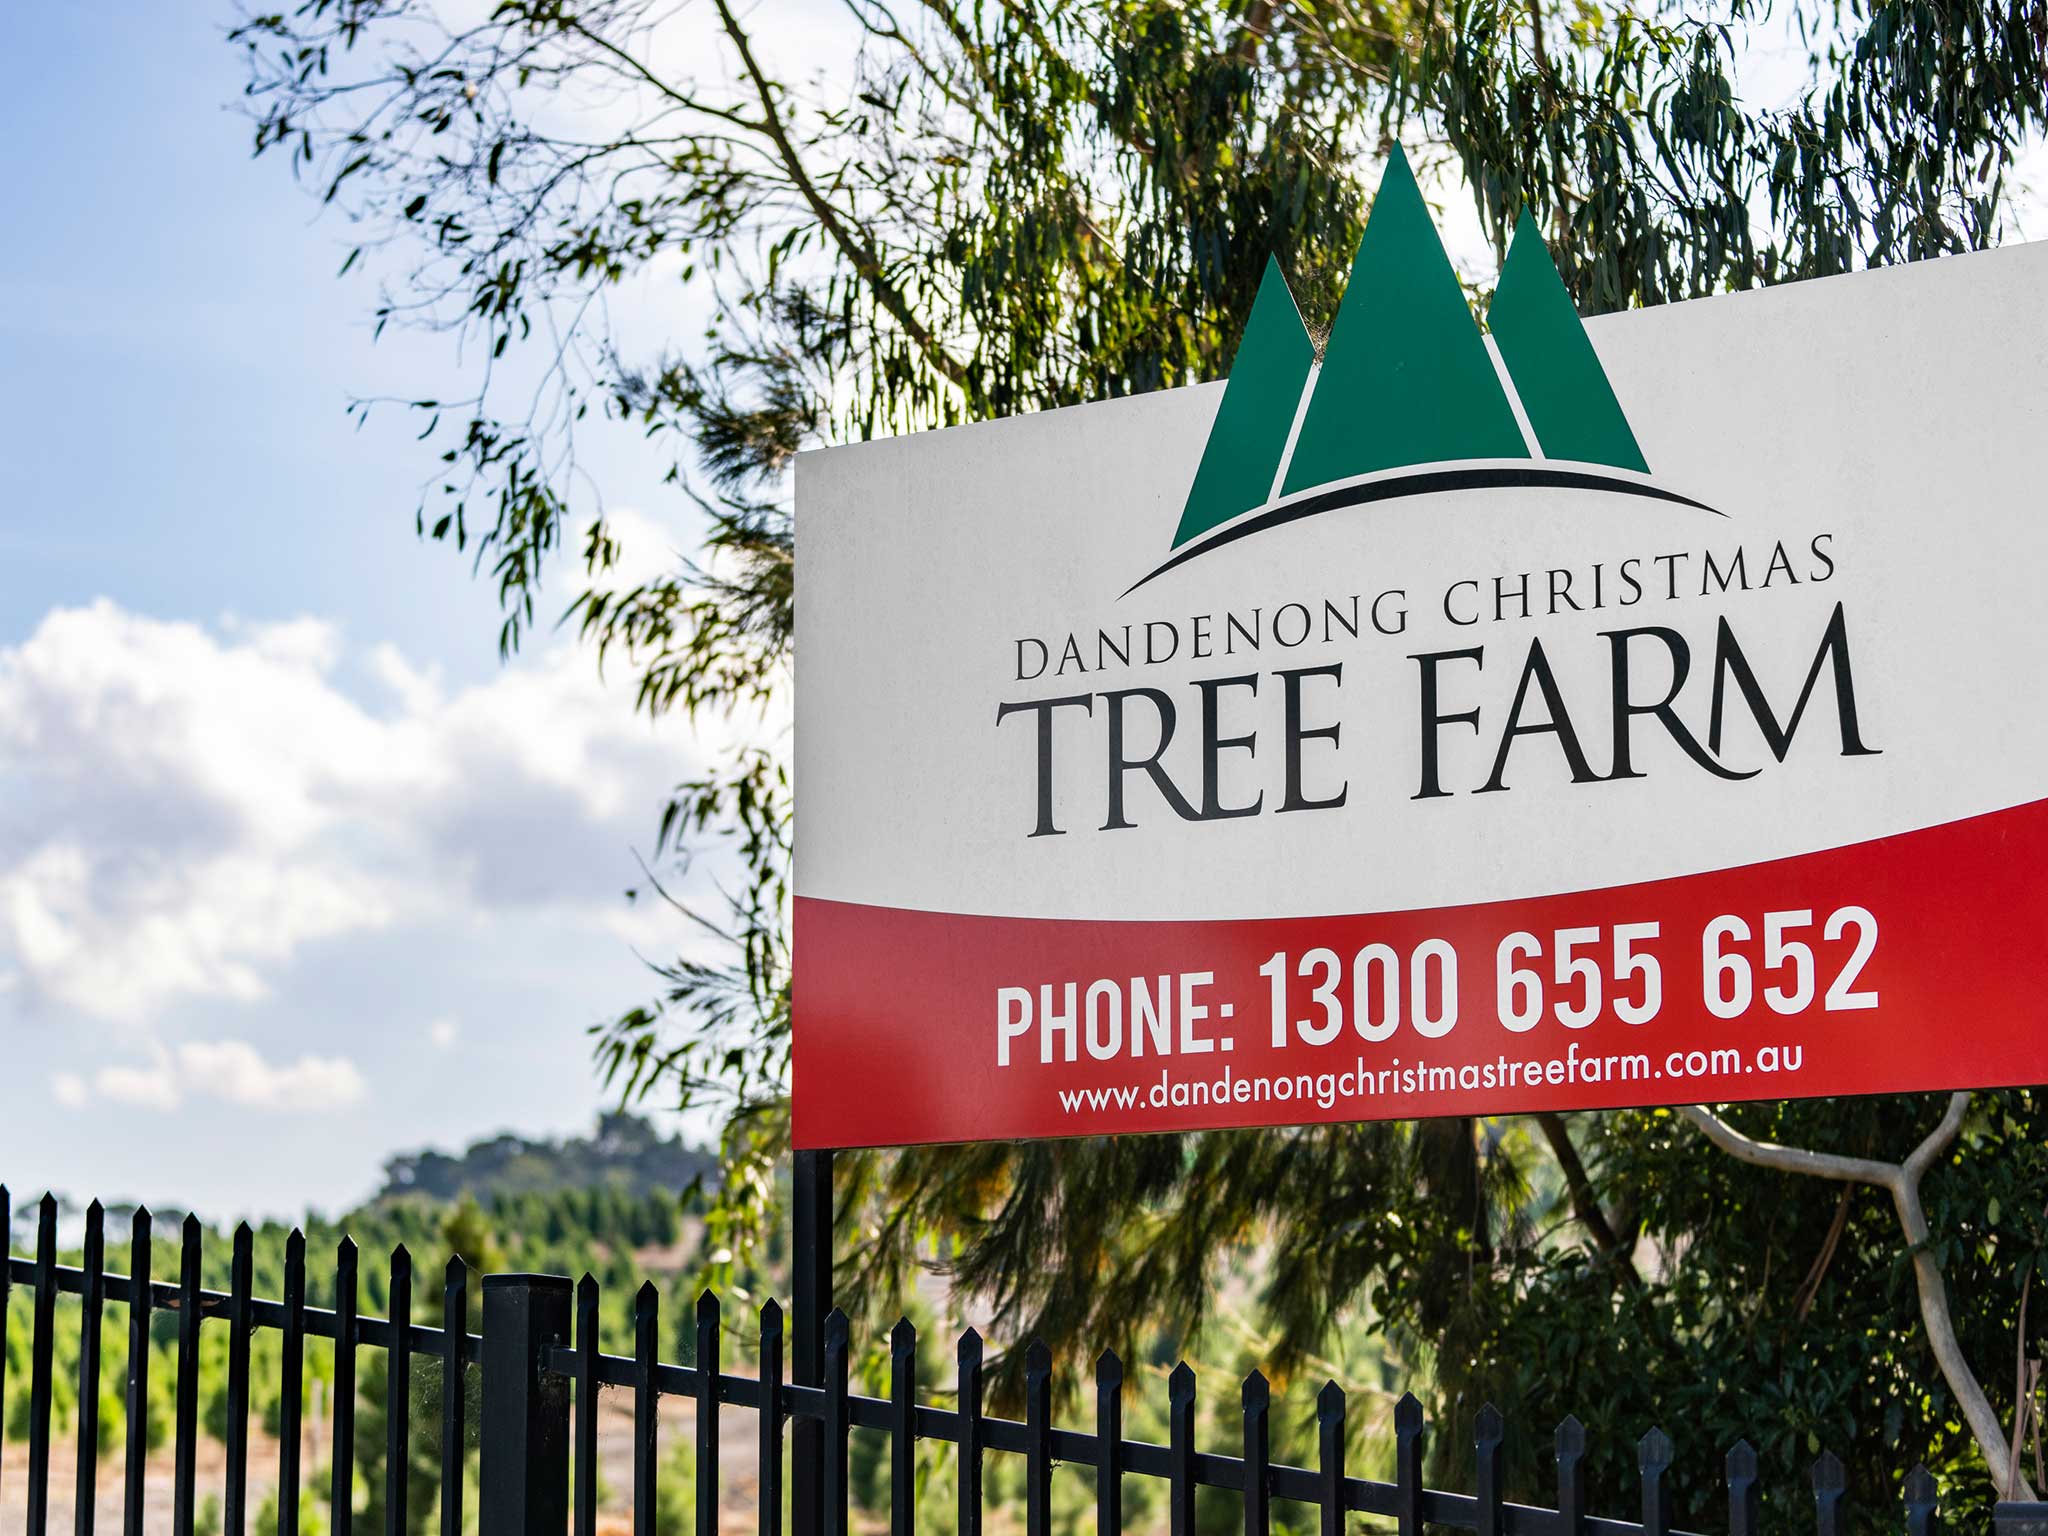 Dandenong Christmas Tree Farm